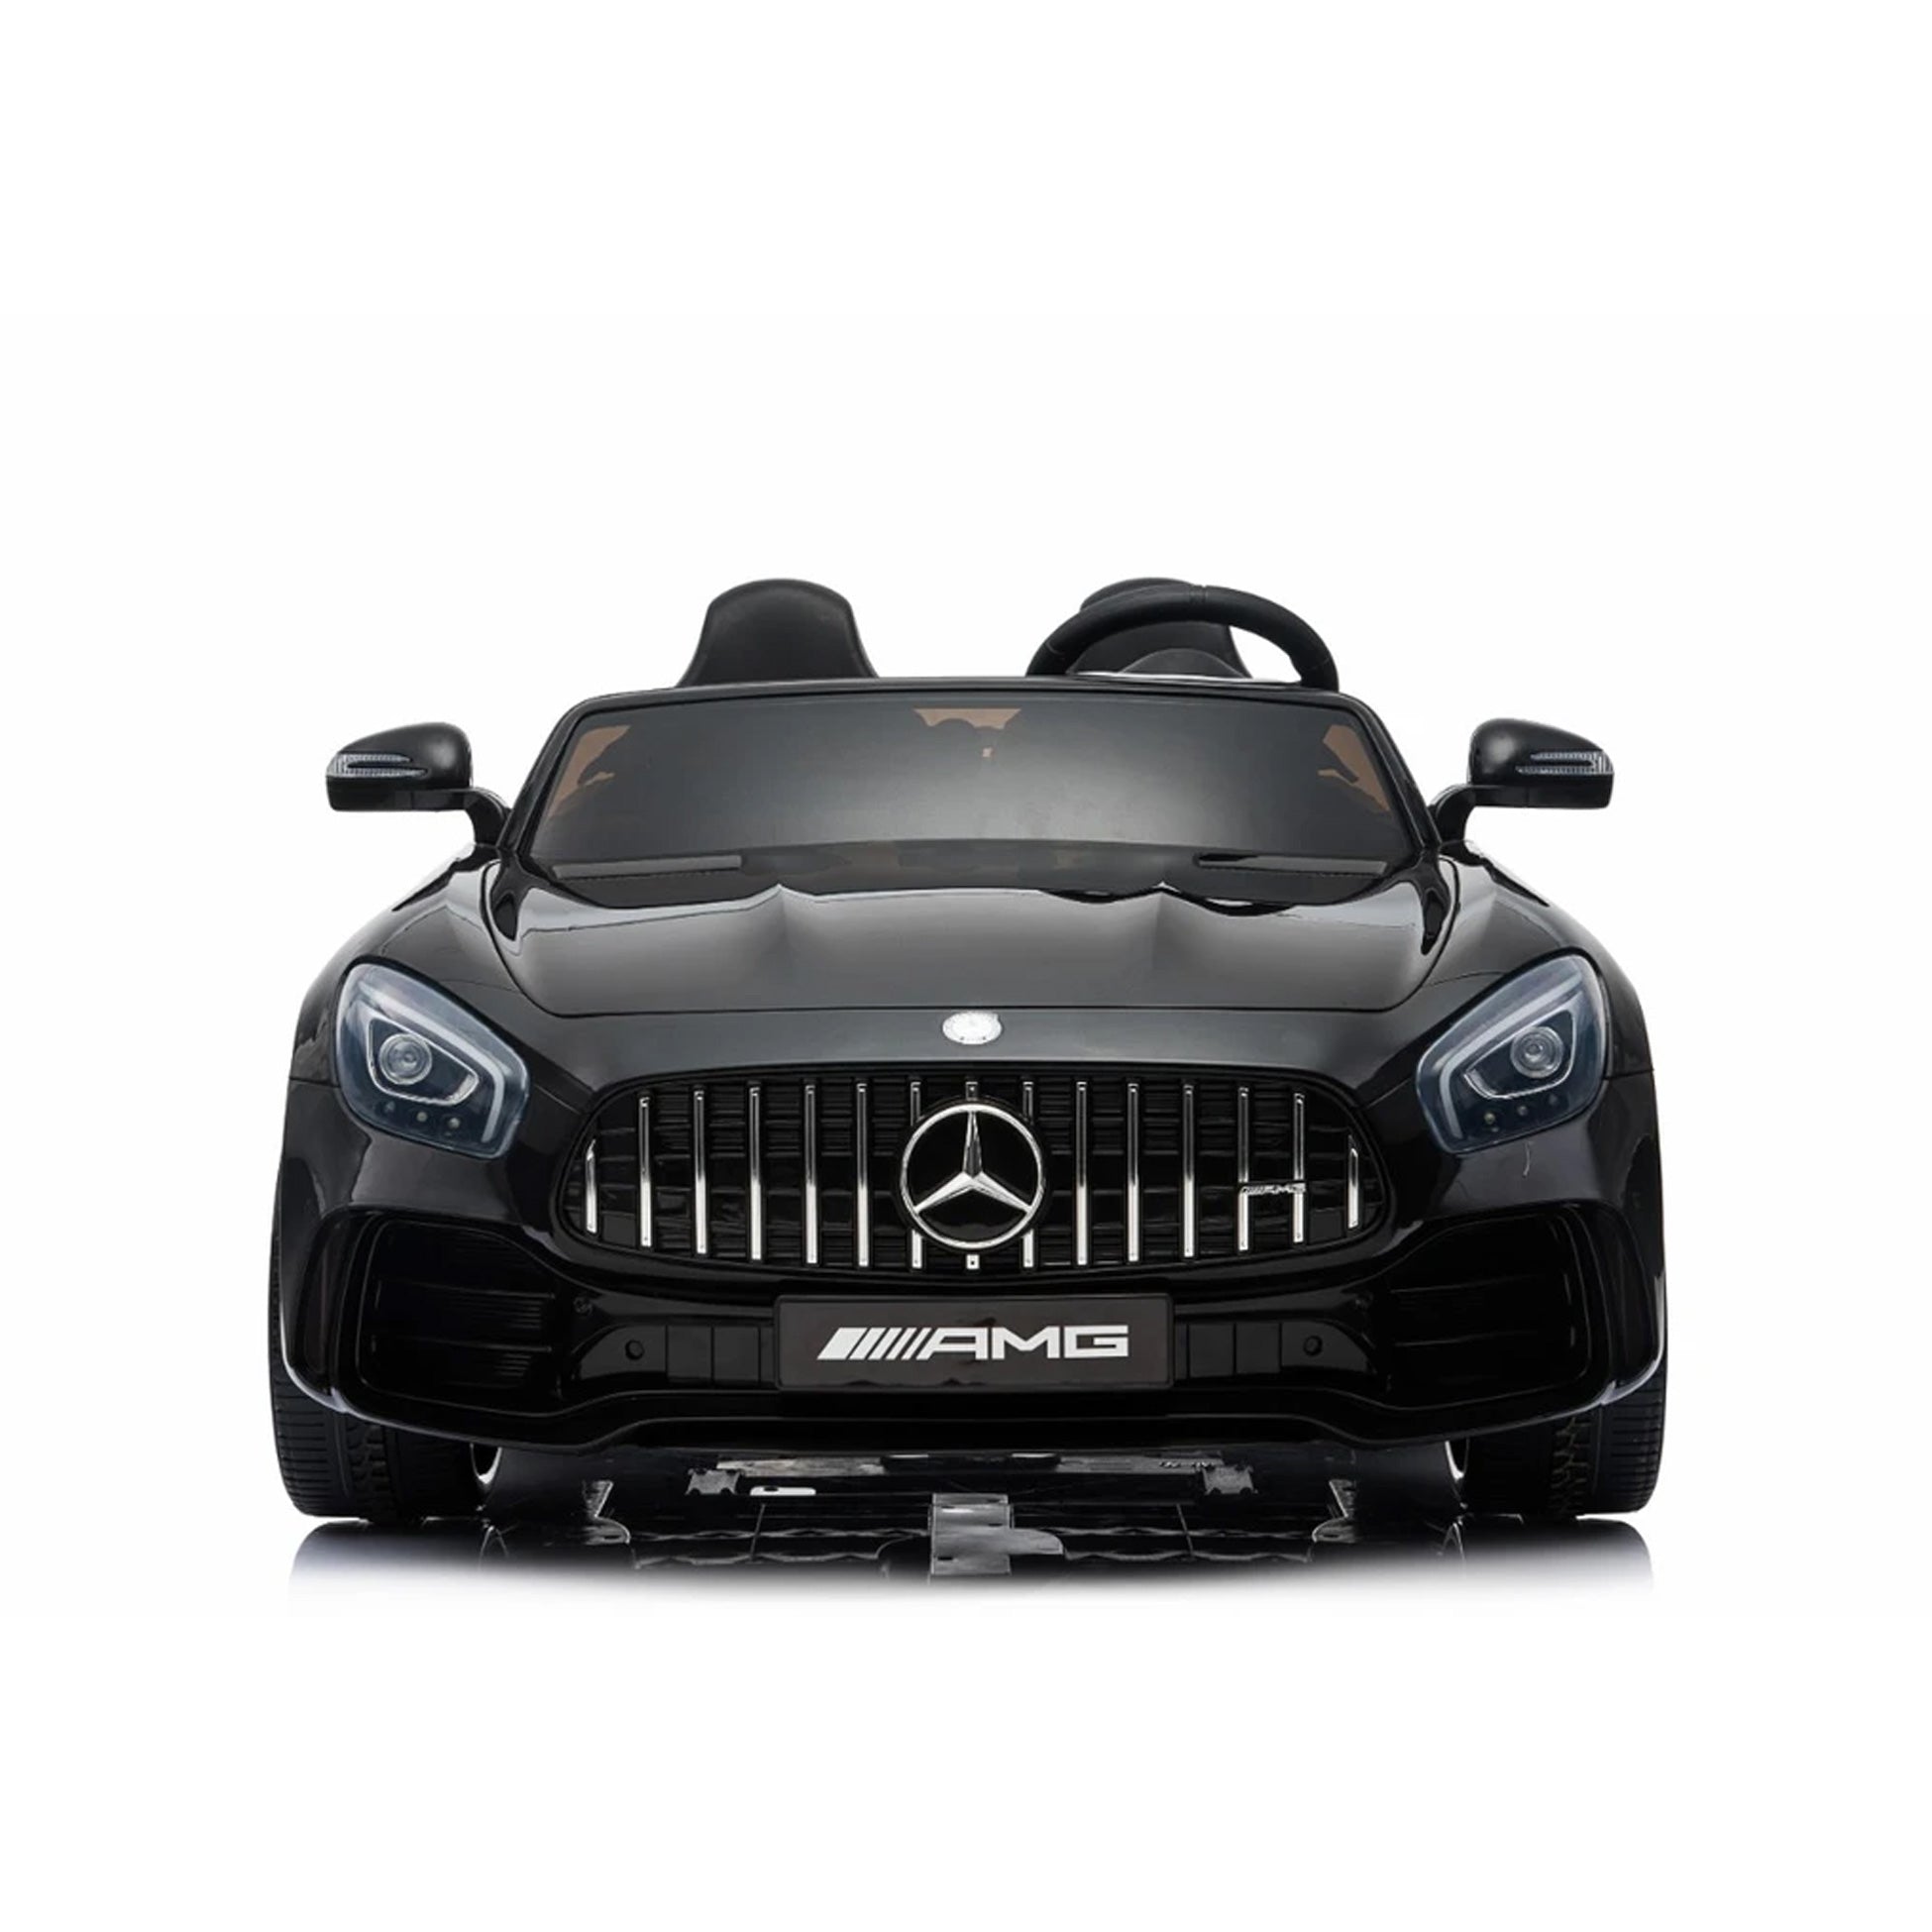 Carro eléctrico - Mercedes GTR - Negro 2 asientos (Edad 2-7)